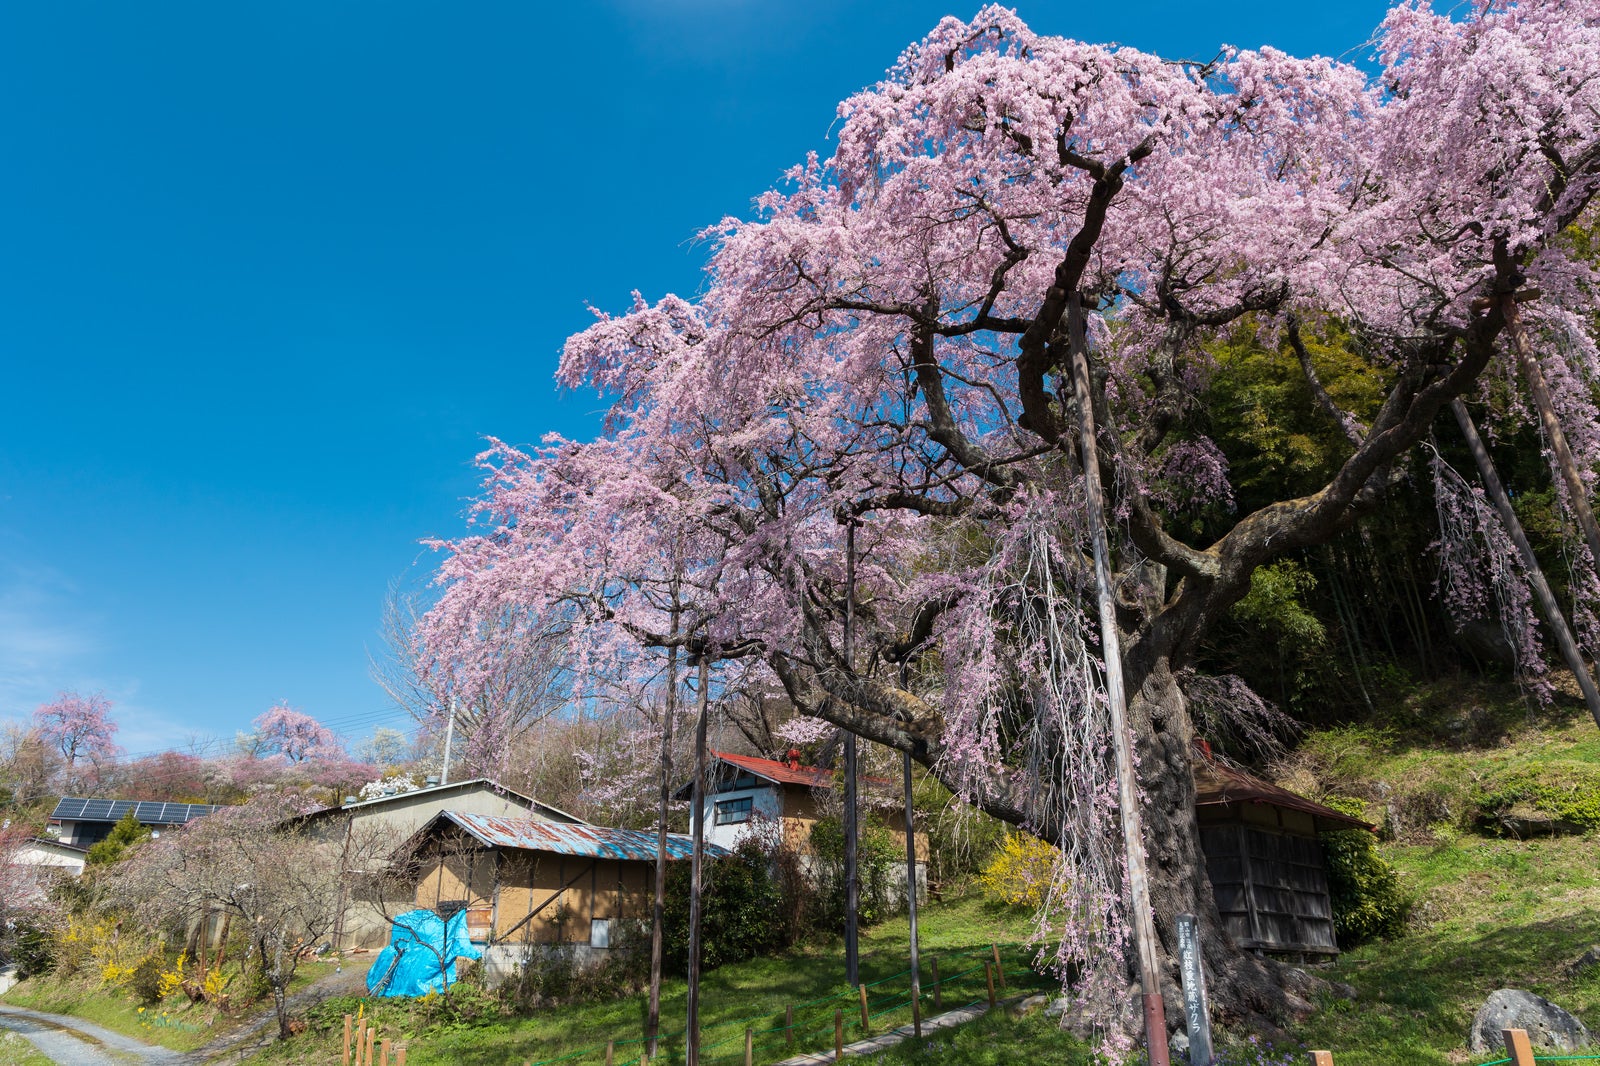 「雲一つない青空と紅枝垂地蔵桜」の写真